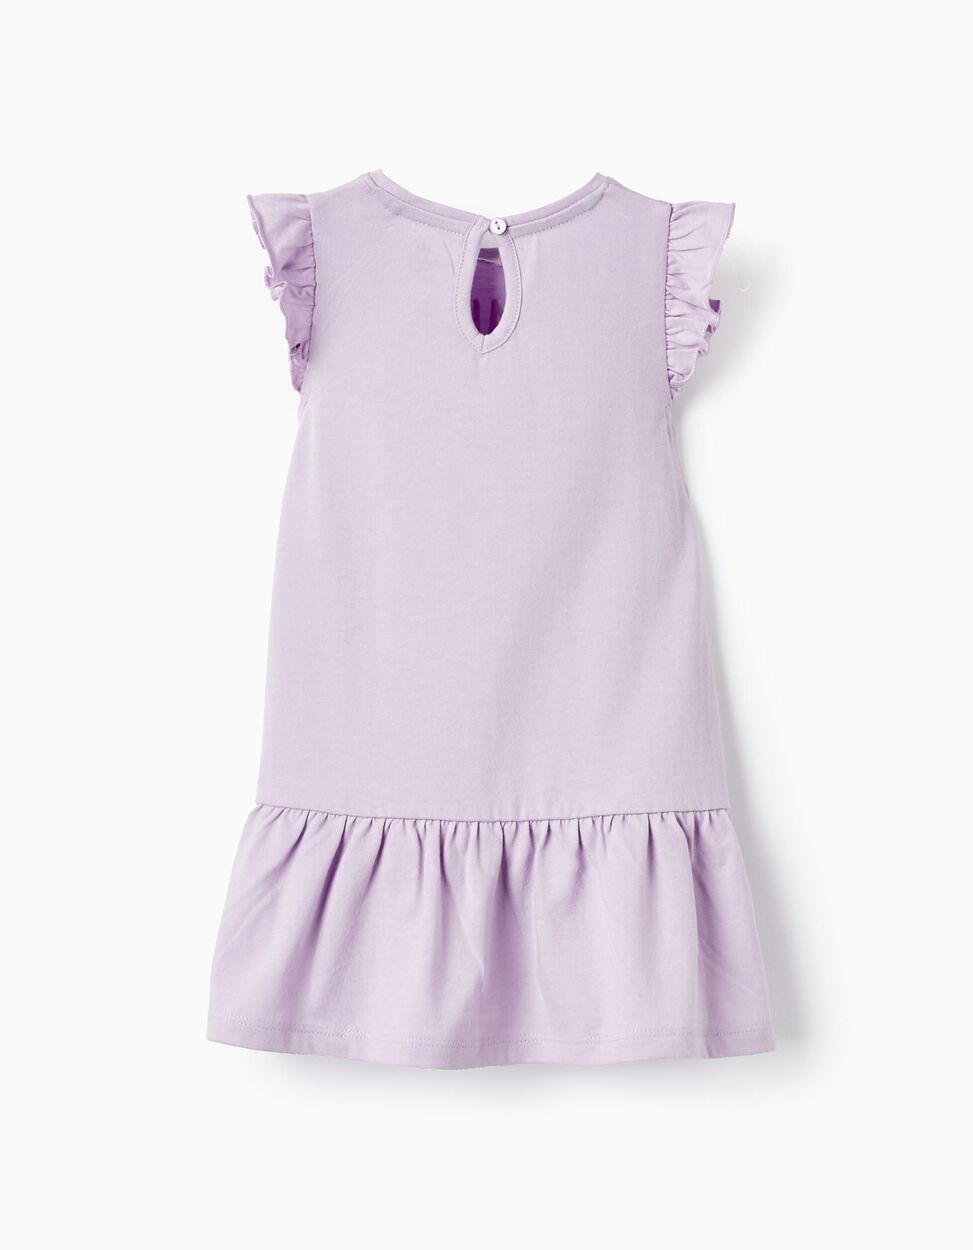 Comprar Online Vestido de Algodón para Bebé Niña 'Minnie Mouse', Morado